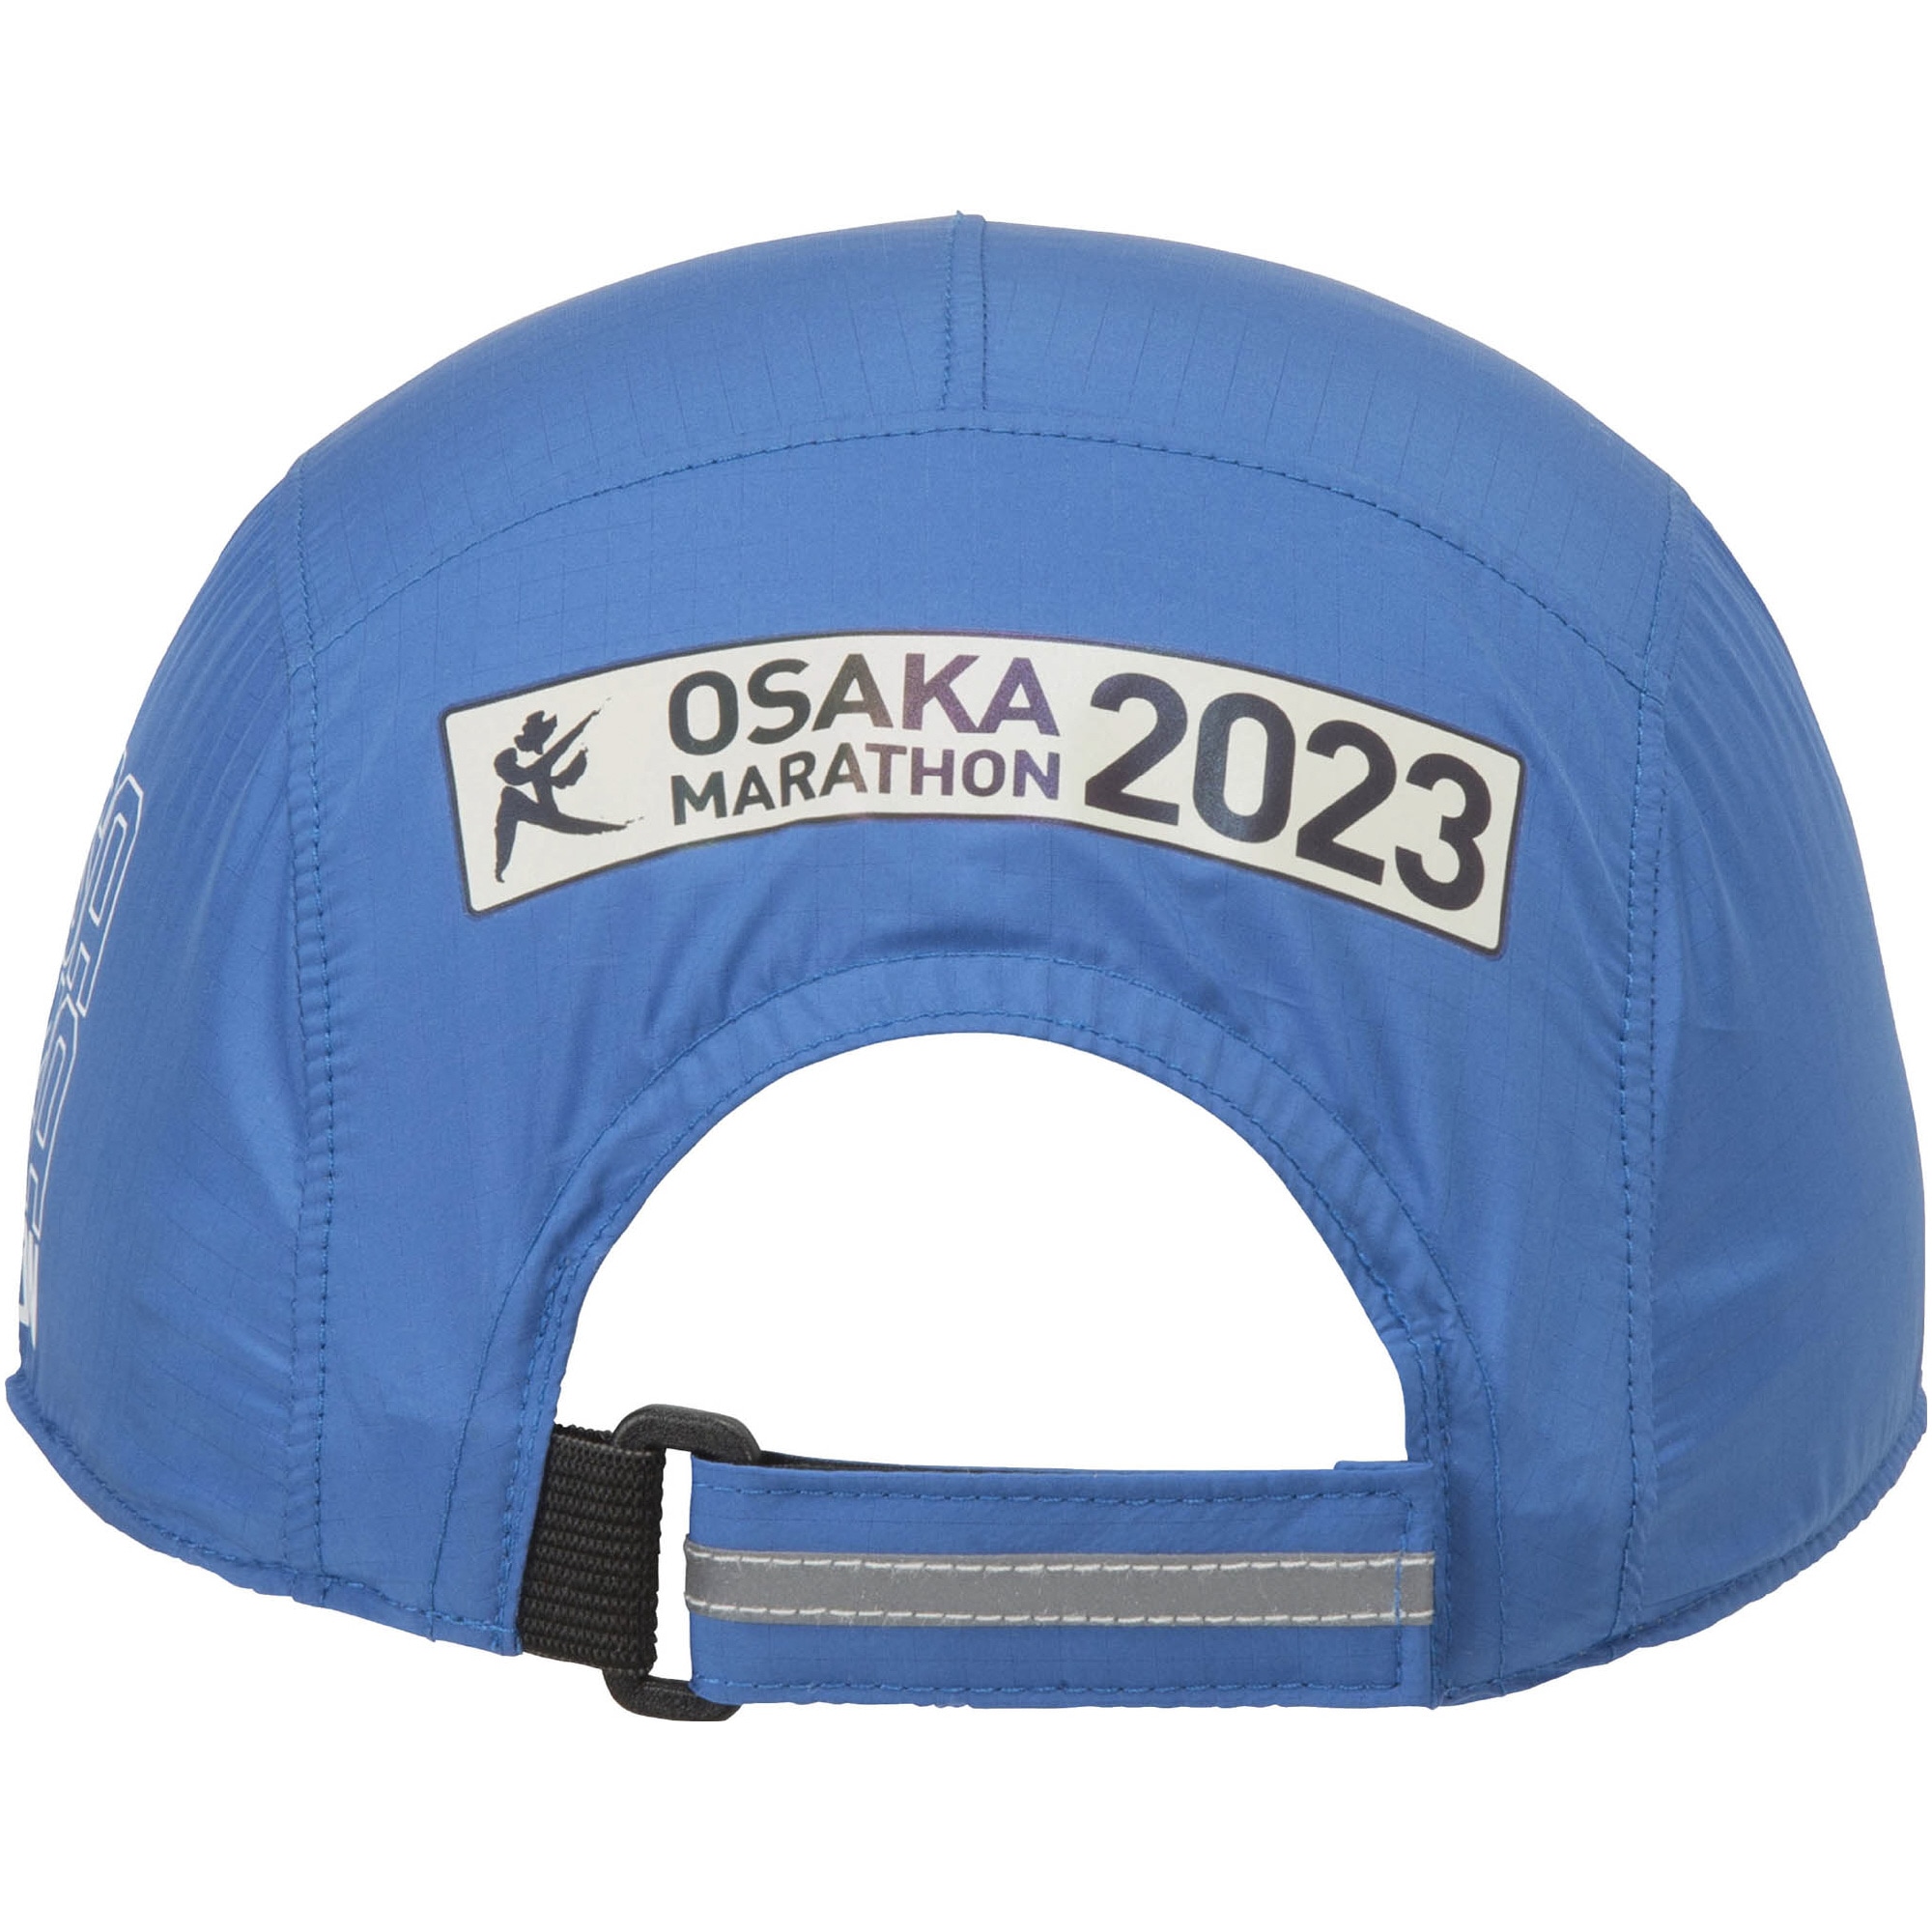 【大阪マラソン2023】大会記念キャップ(オーロラ)[ユニセックス]